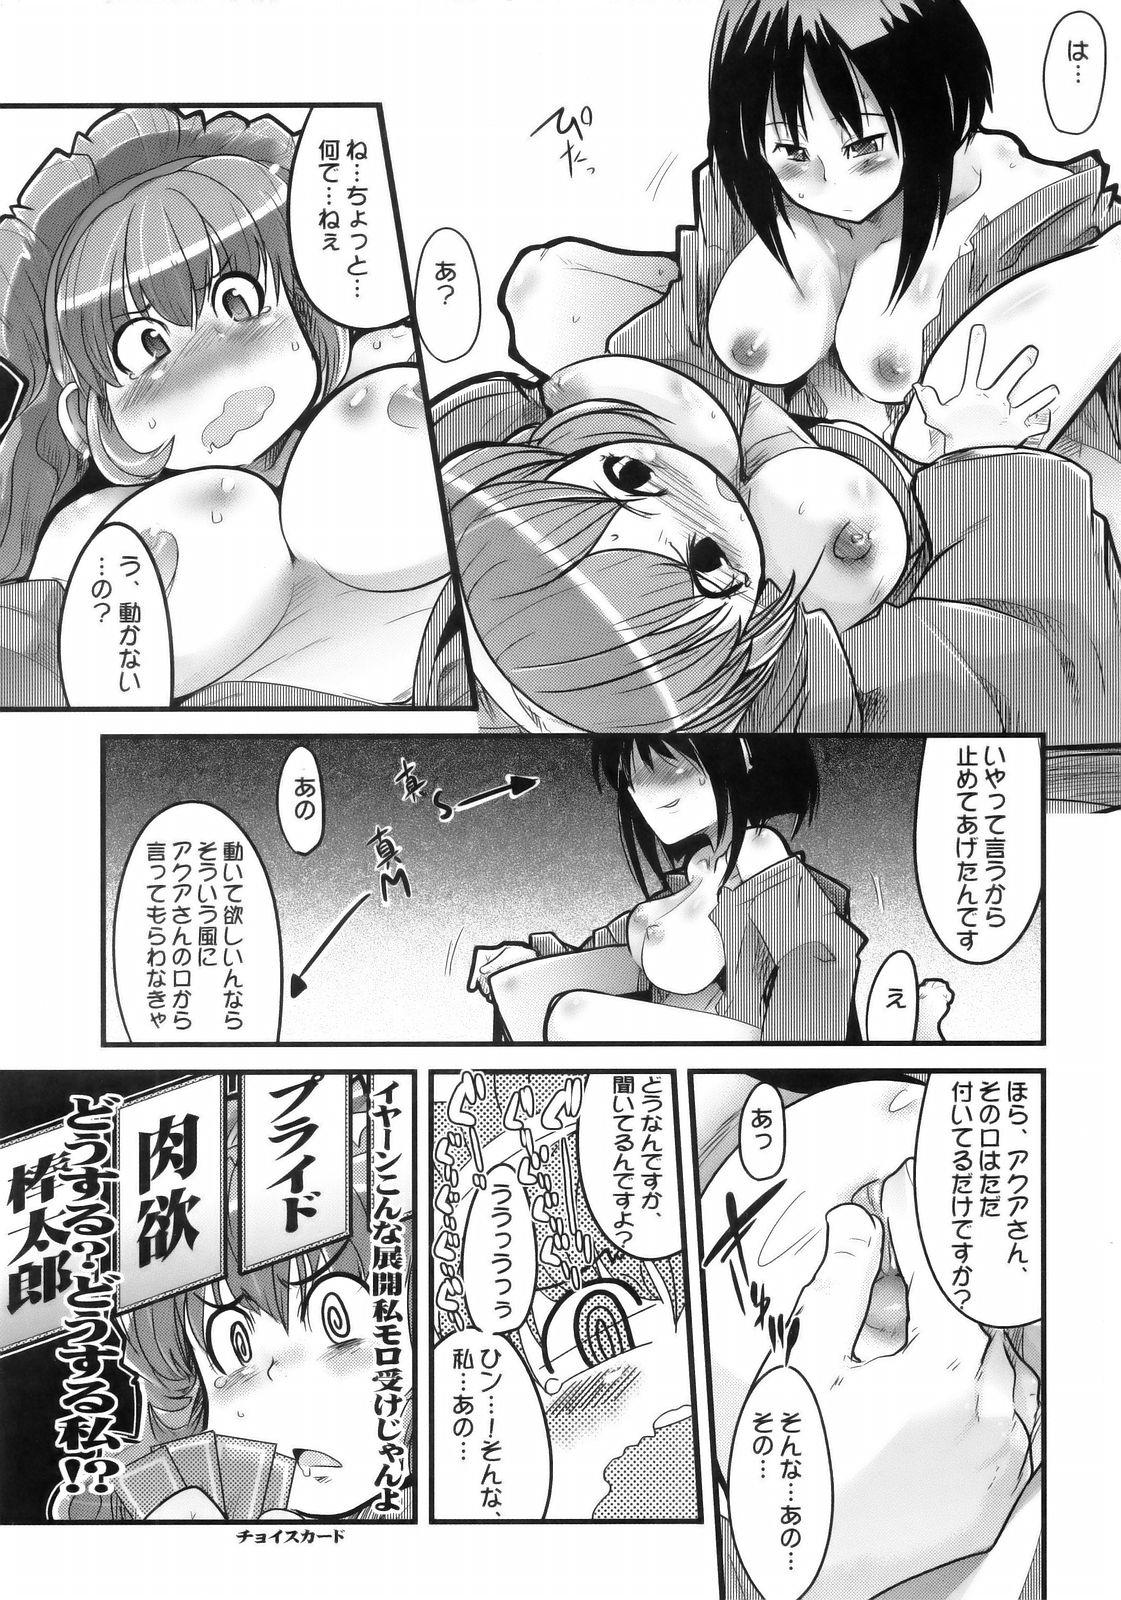 Strap On Boku no Watashi no Super Bobobbo Taisen MGJOX - Super robot wars Amateurporn - Page 12